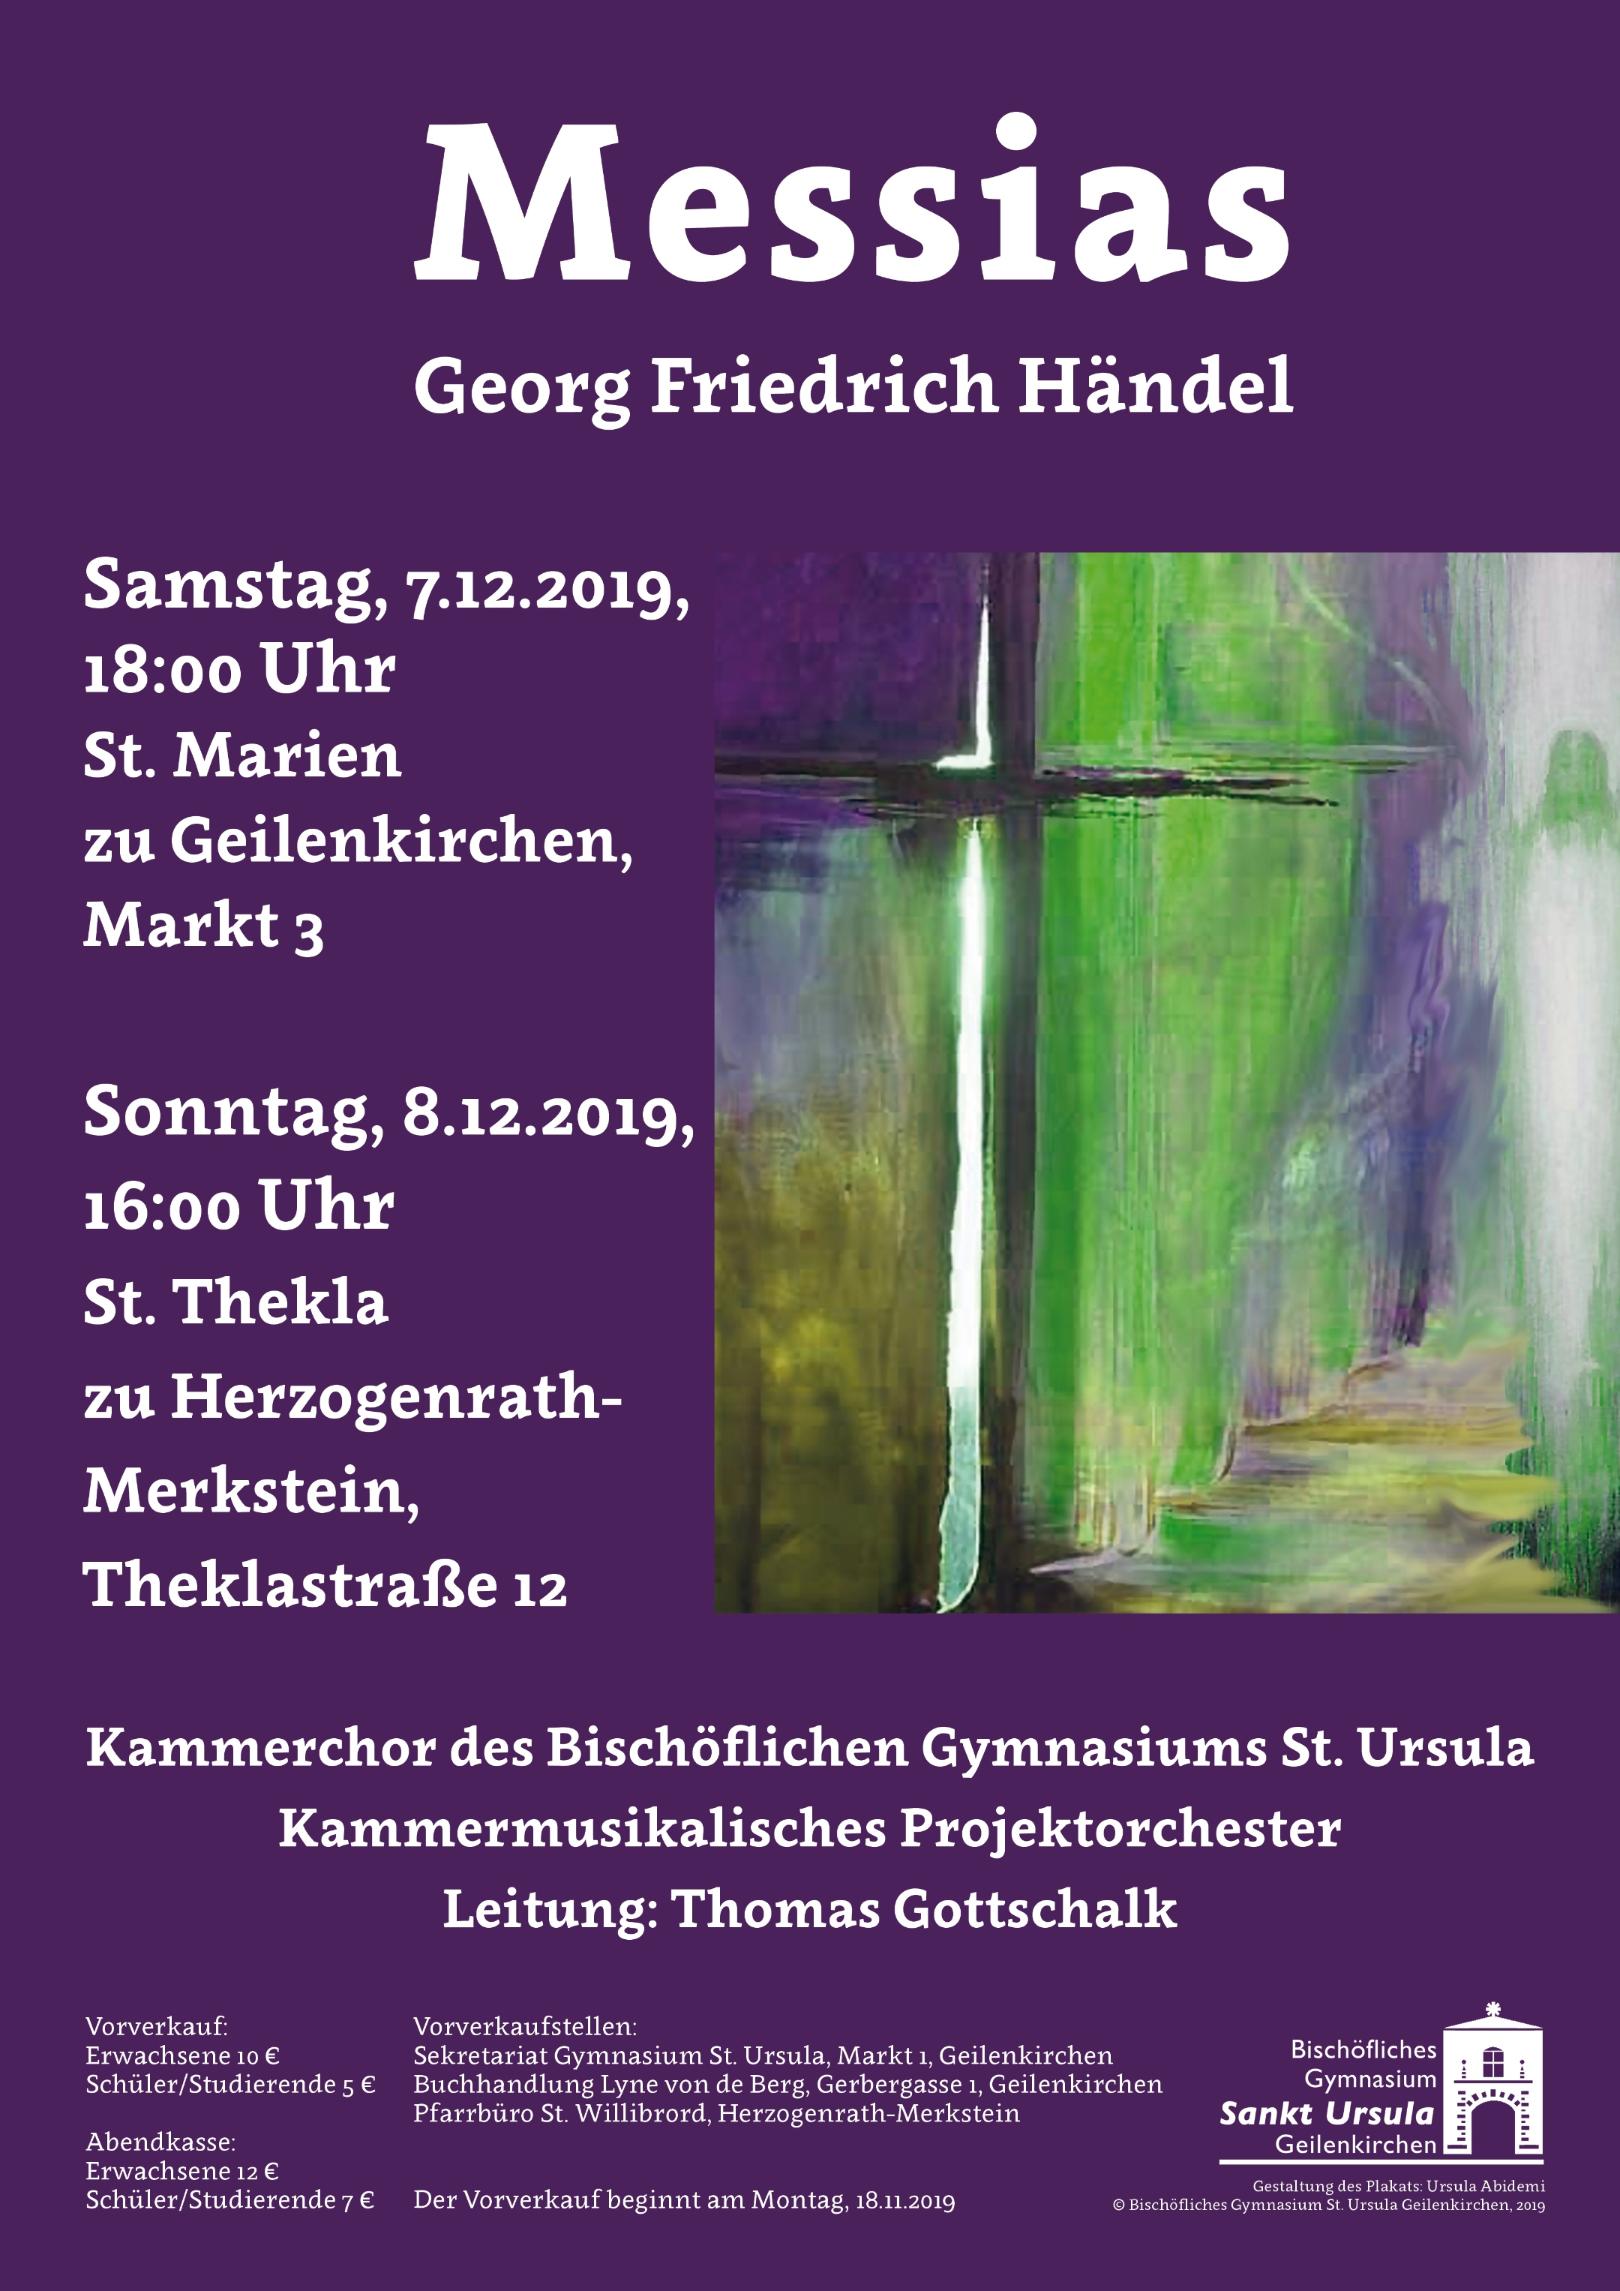 2019 Messias Plakat (c) Bischöfliches Gymnasium St. Ursula Geilenkirchen (Dominik Esser)